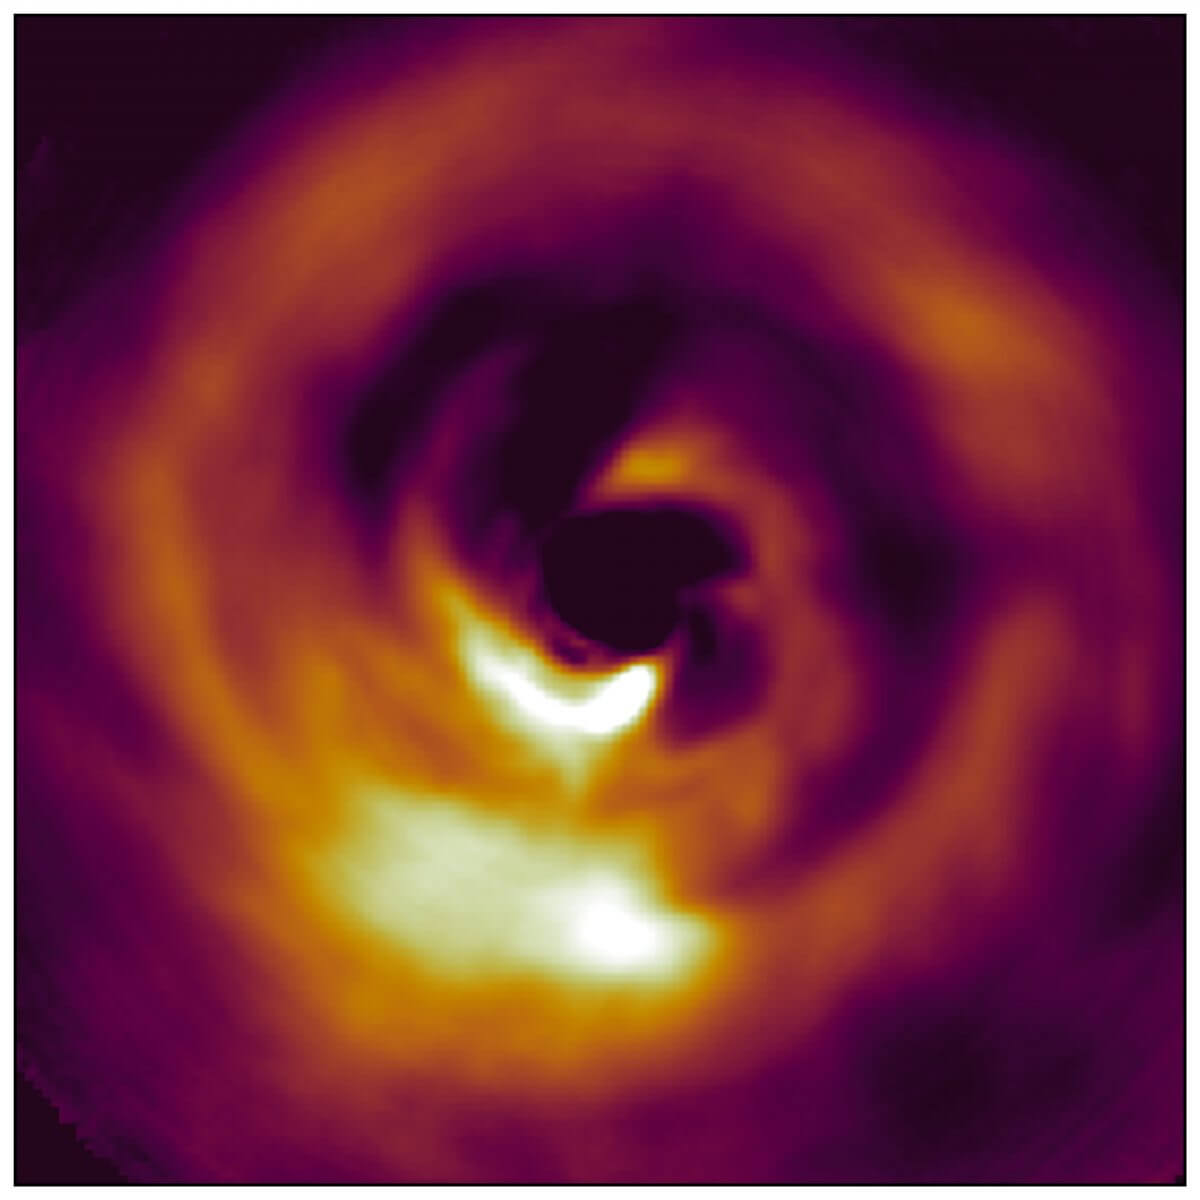 すばる望遠鏡が撮影した「ぎょしゃ座AB星」周辺の赤外線画像。中央に位置する「ぎょしゃ座AB星」からの光はステラーコロナグラフを使って遮られている（Credit: T. Currie/Subaru Telescope）